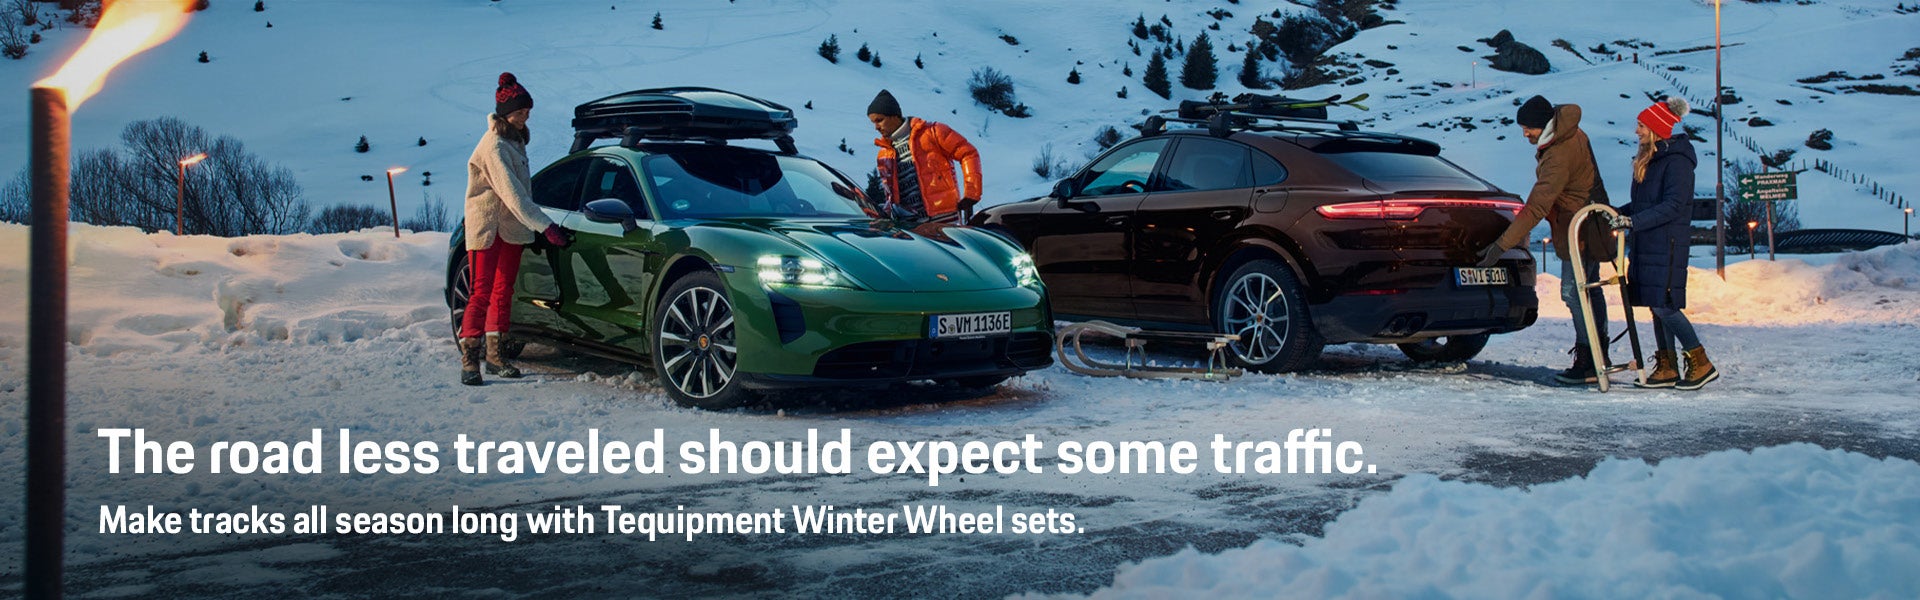 Purchase Tequipment Summer Wheel Sets at Porsche Warwick